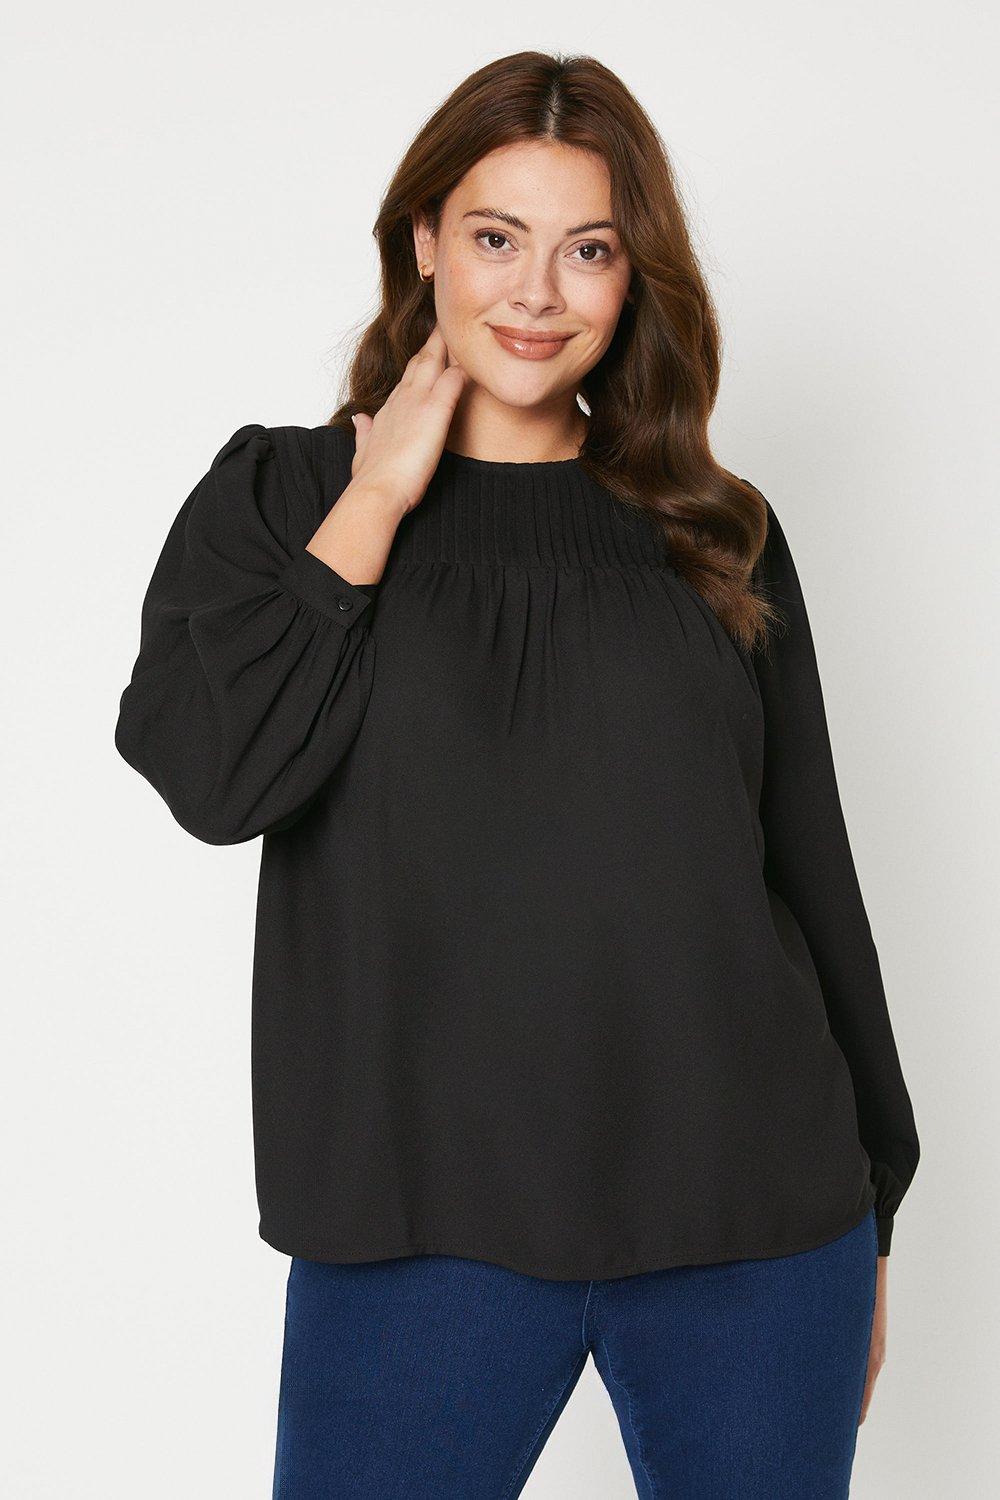 Черная блузка с длинными рукавами и складками на кокетке Curve Dorothy Perkins, черный блузка oggi черная 44 размер новая